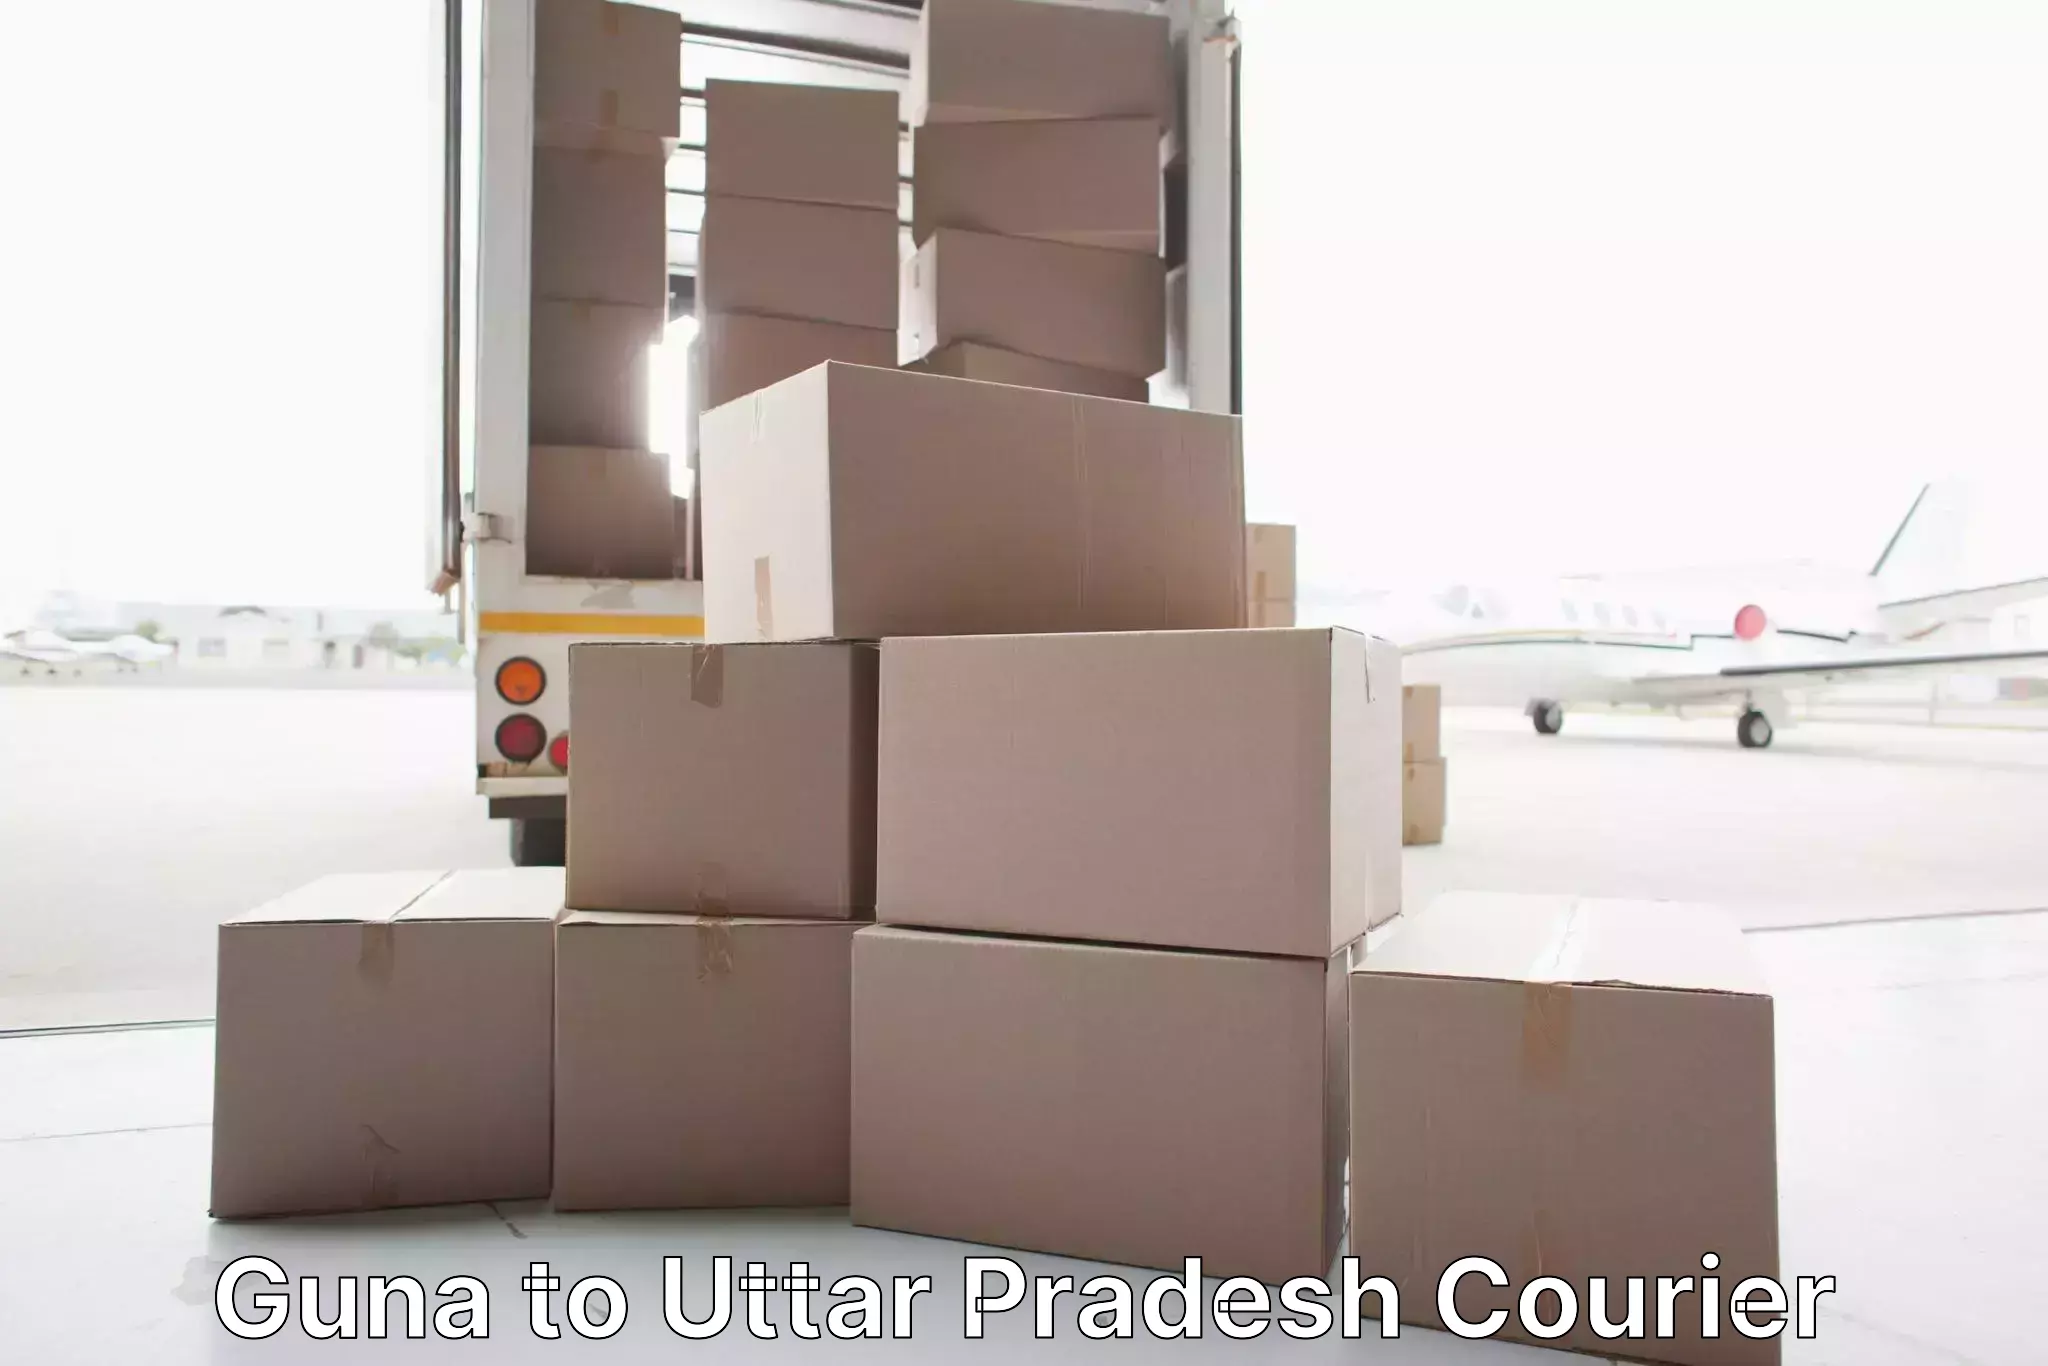 Home moving experts Guna to Uttar Pradesh